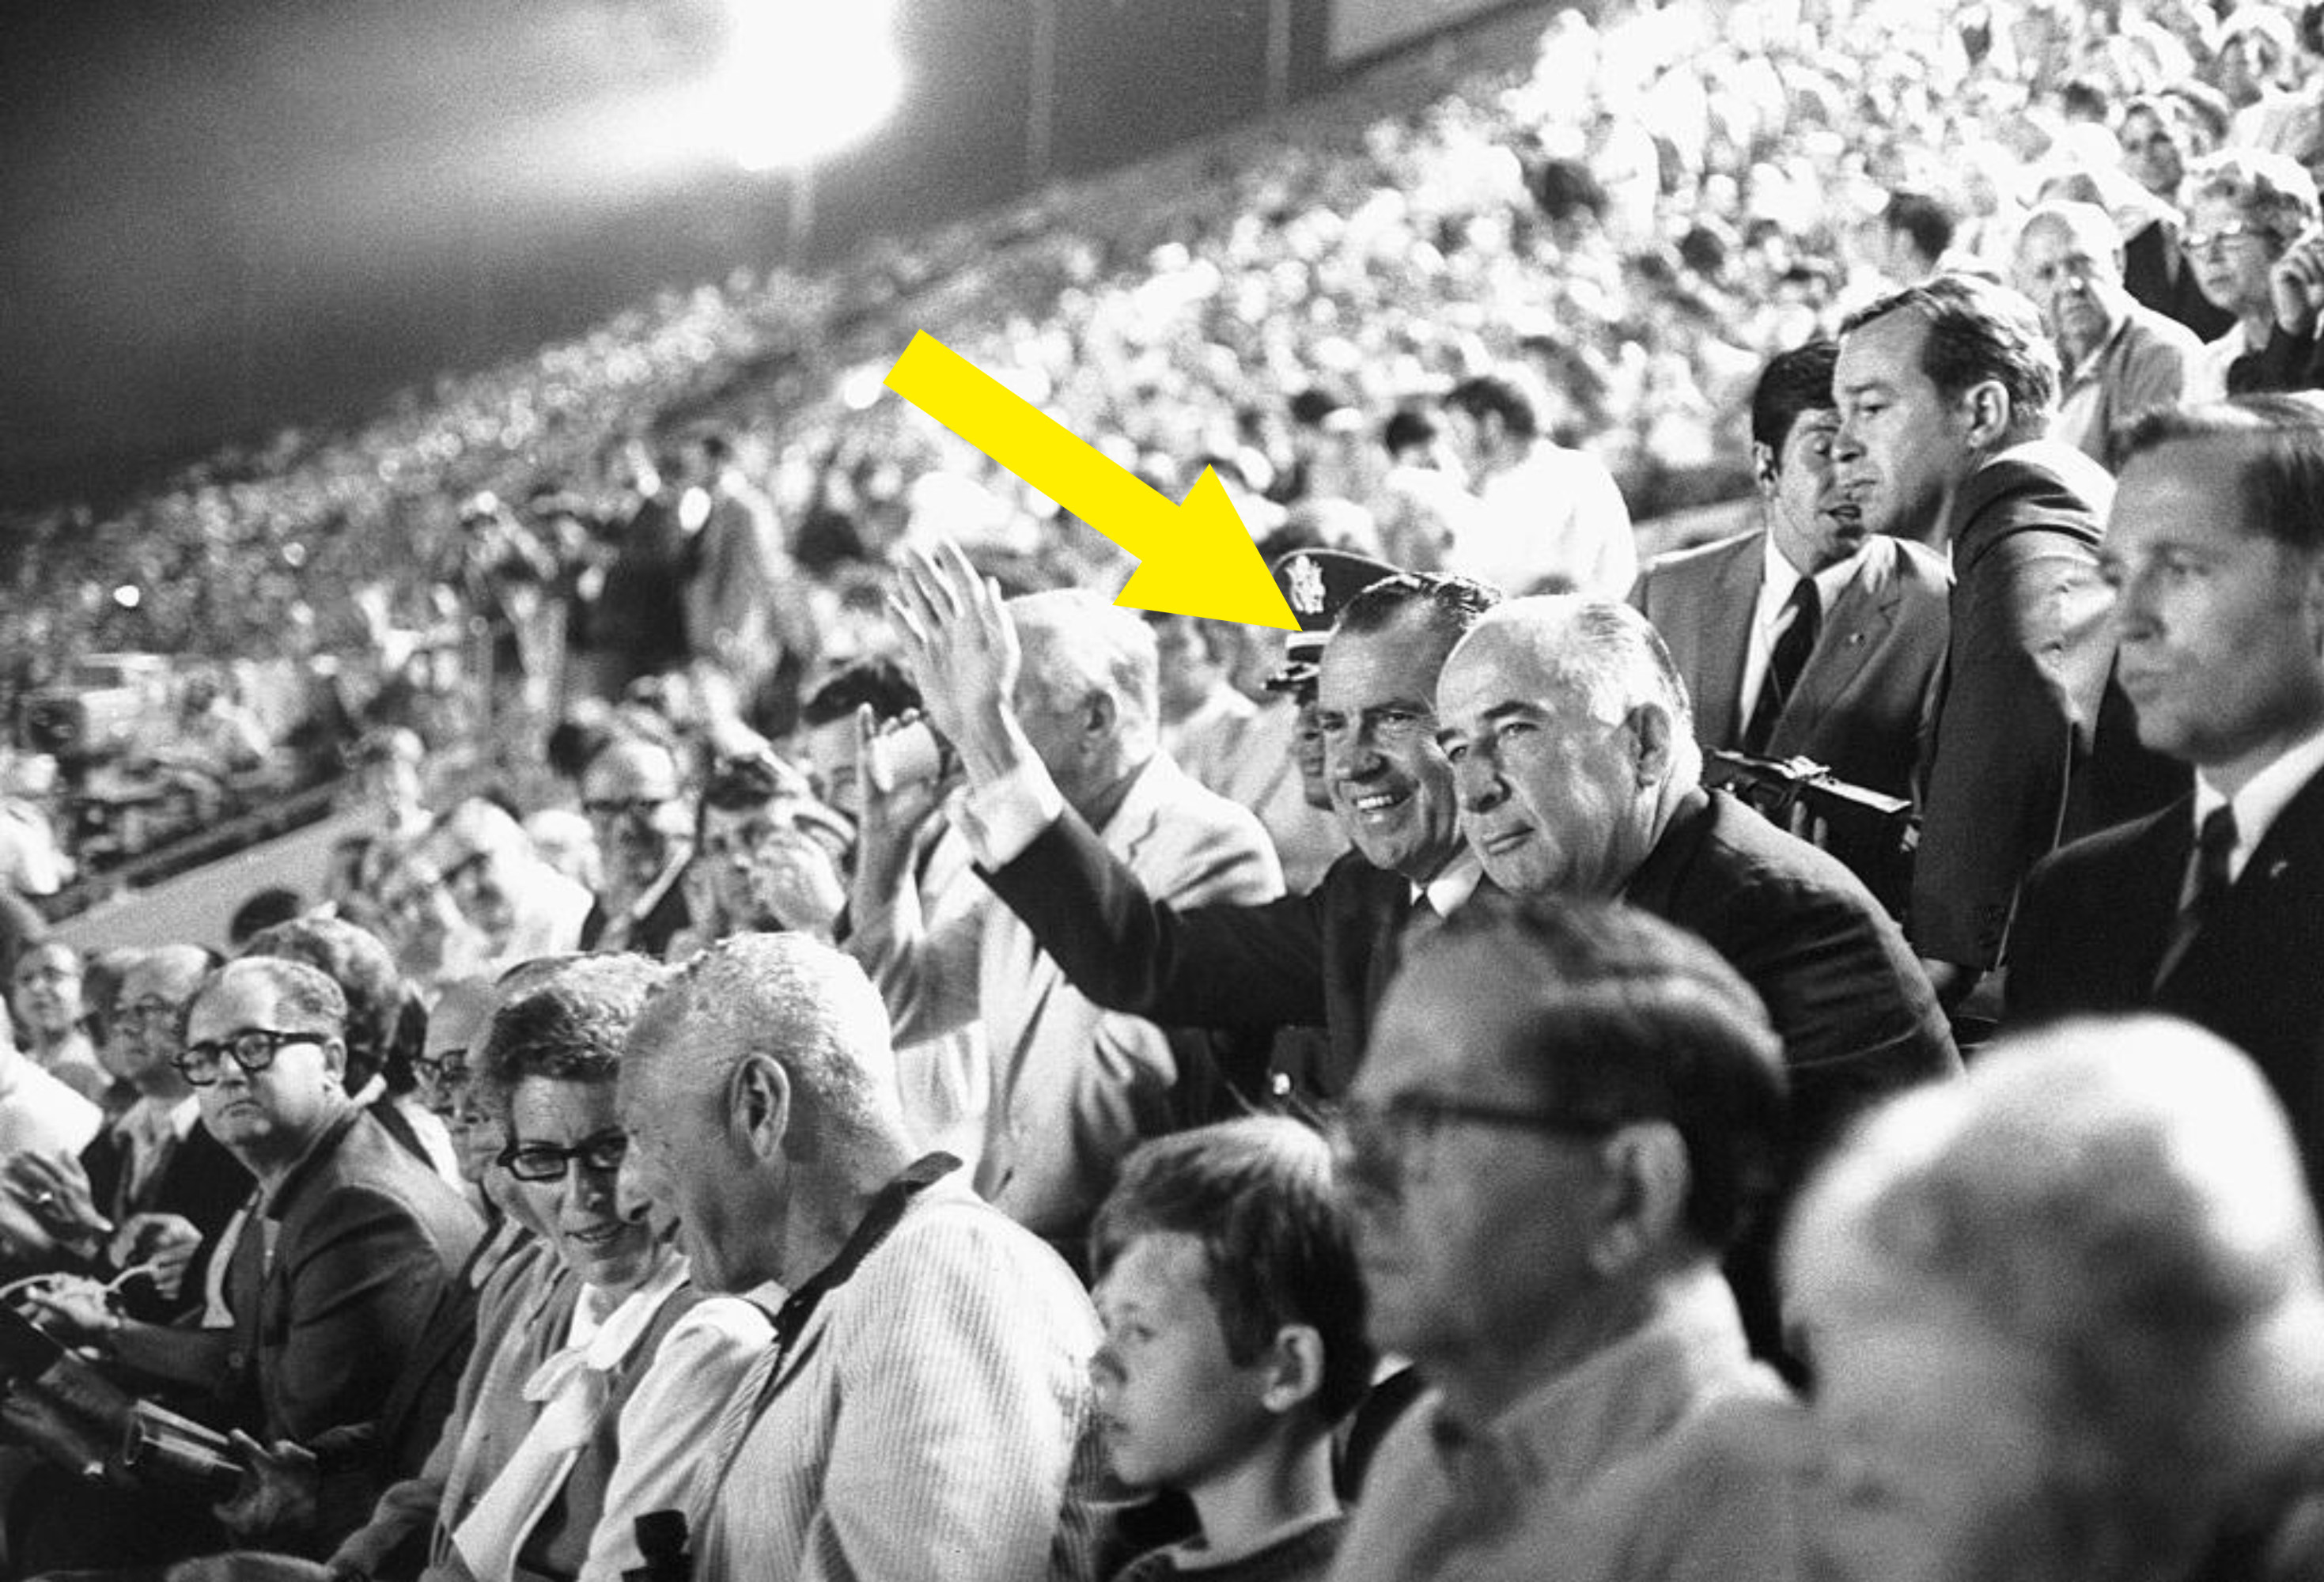 Richard Nixon at a game